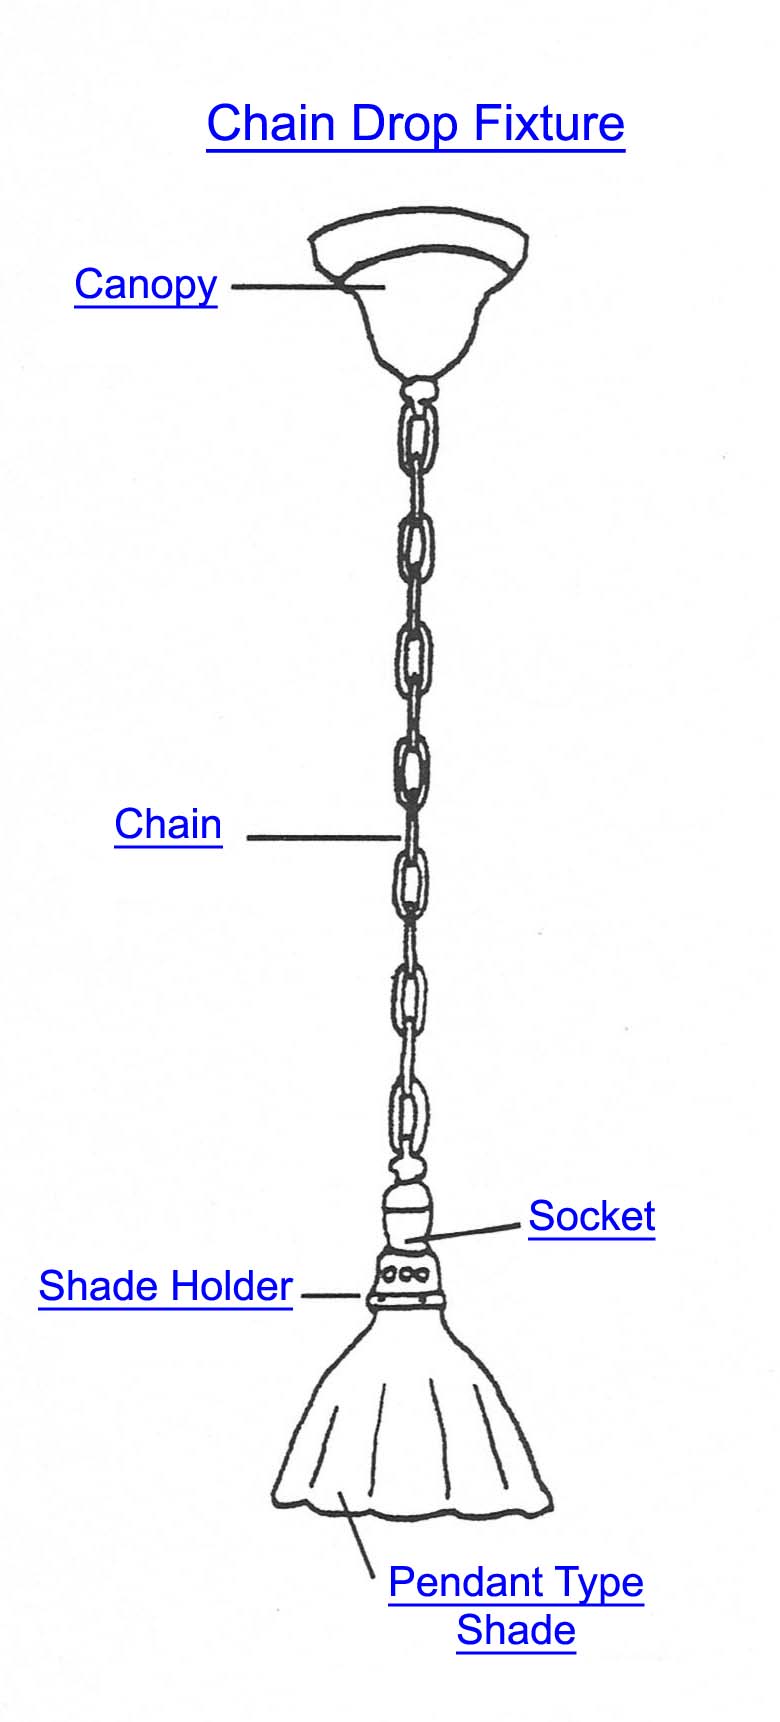 Chain Drop Fixture